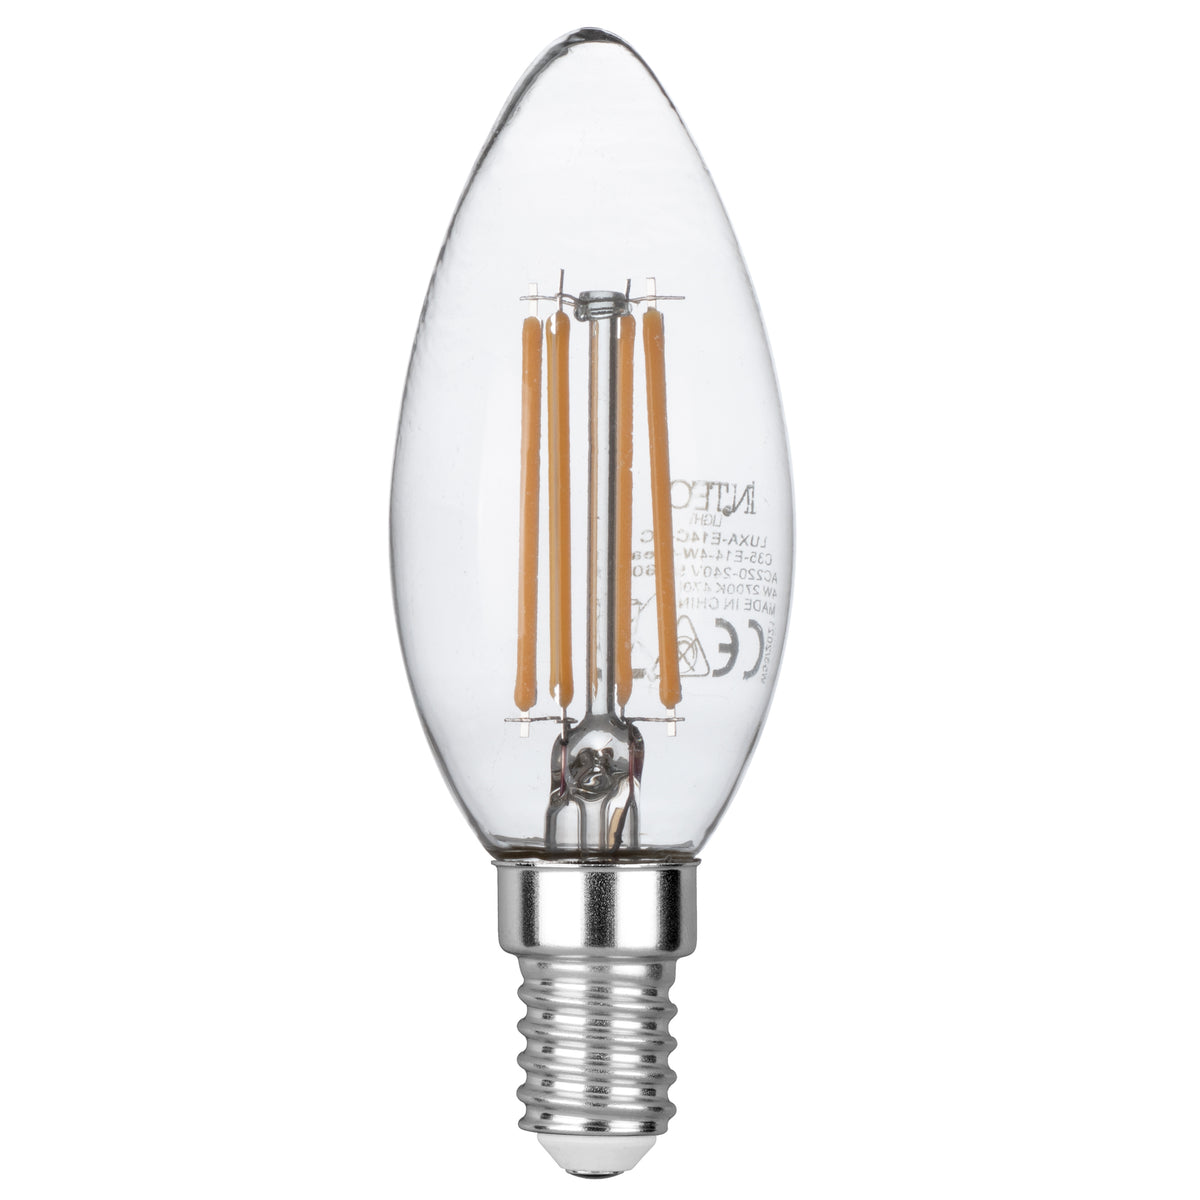 Ampoule LED décorative LUXA 8W ambre, douille E27, lumière chaude 32x16 cm.